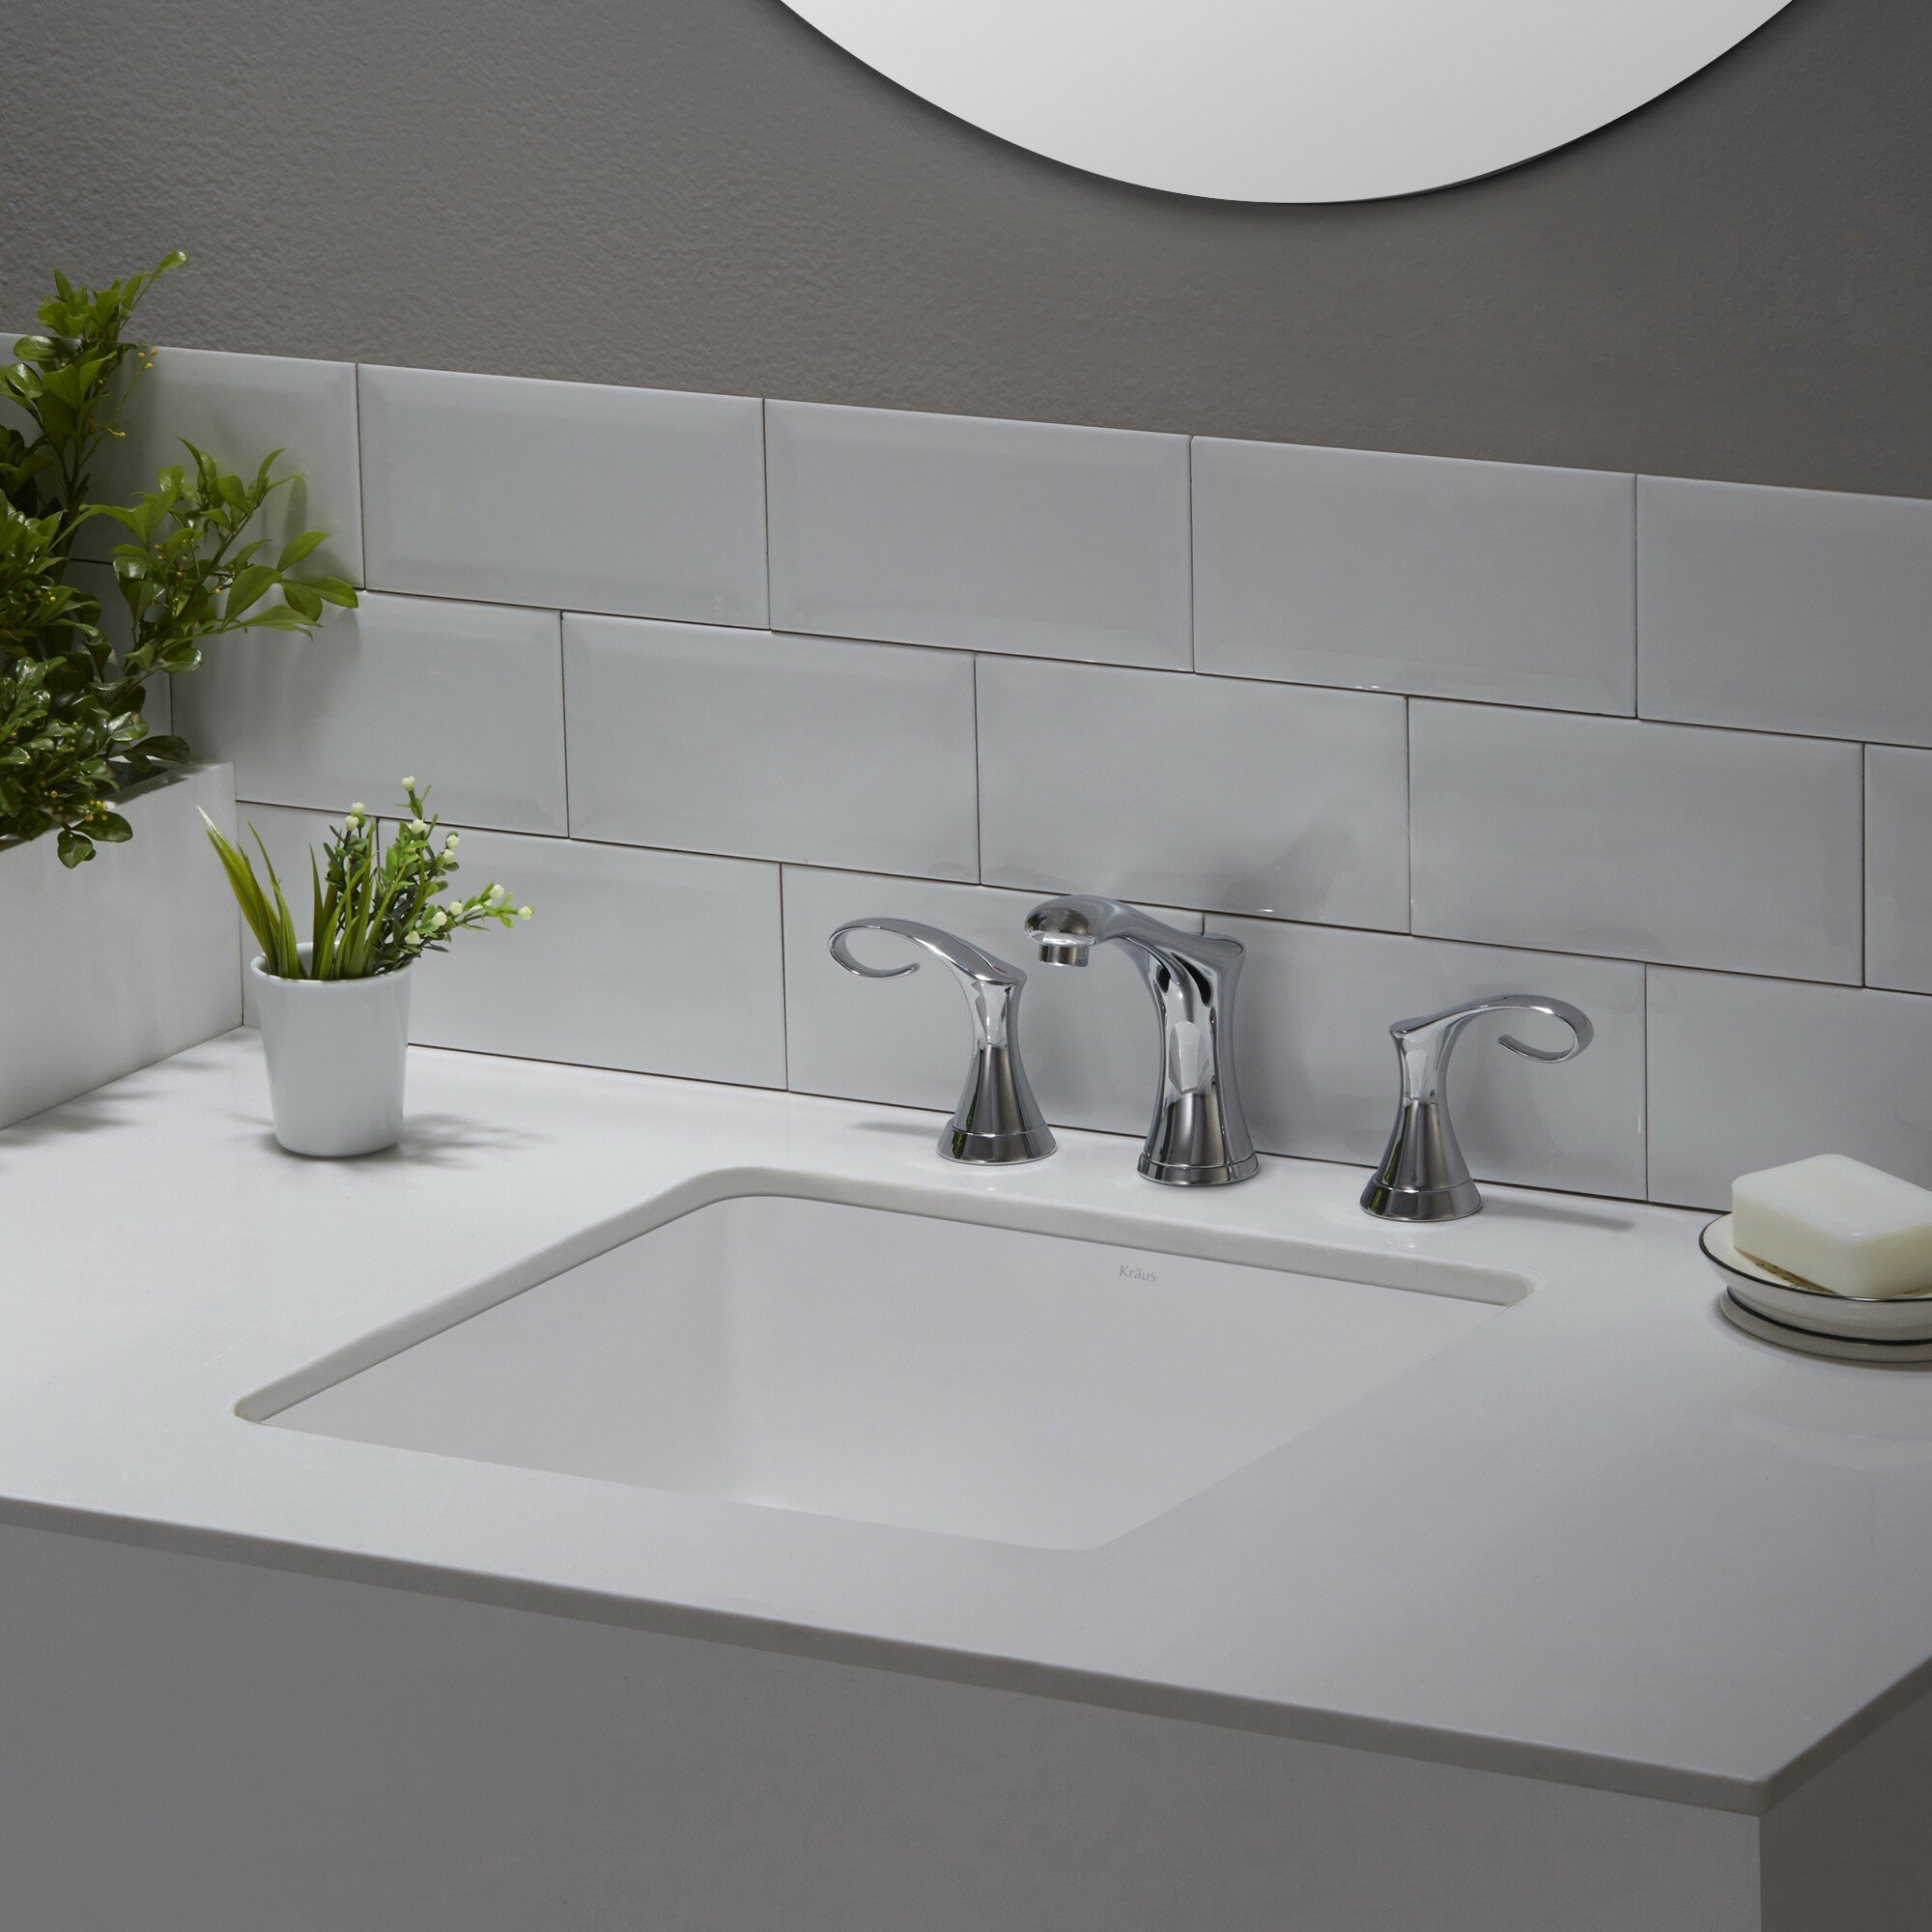 Square Undermount Bathroom Sink
 Elavo™ Ceramic Square Undermount Bathroom Sink with